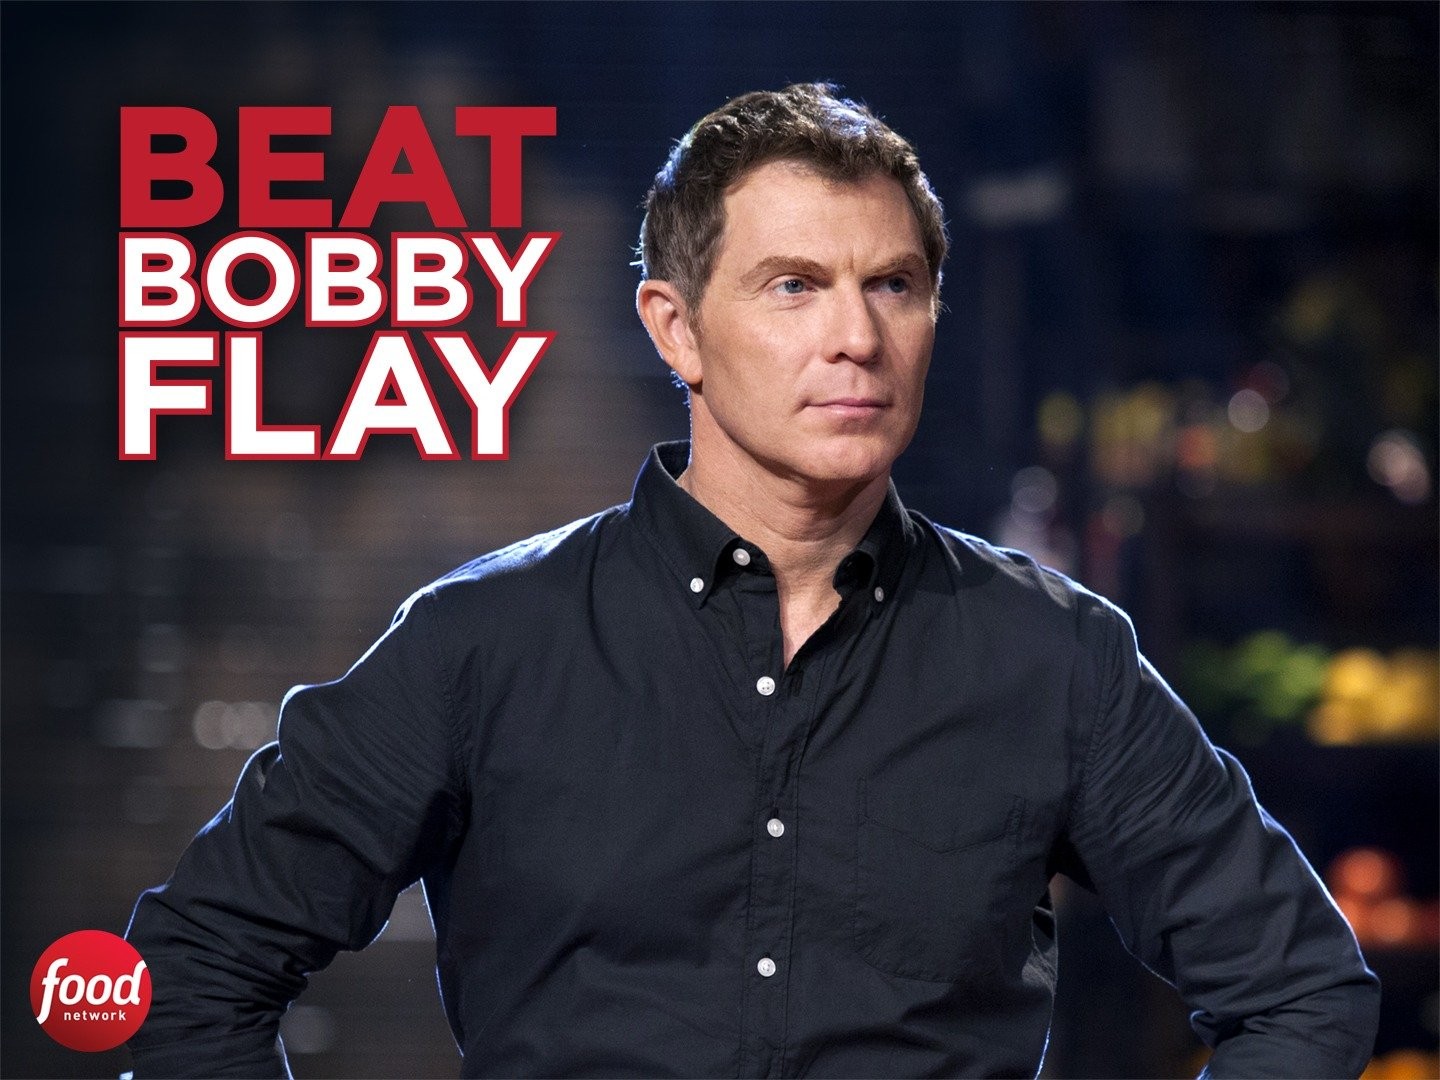 Beat Bobby Flay - Rotten Tomatoes